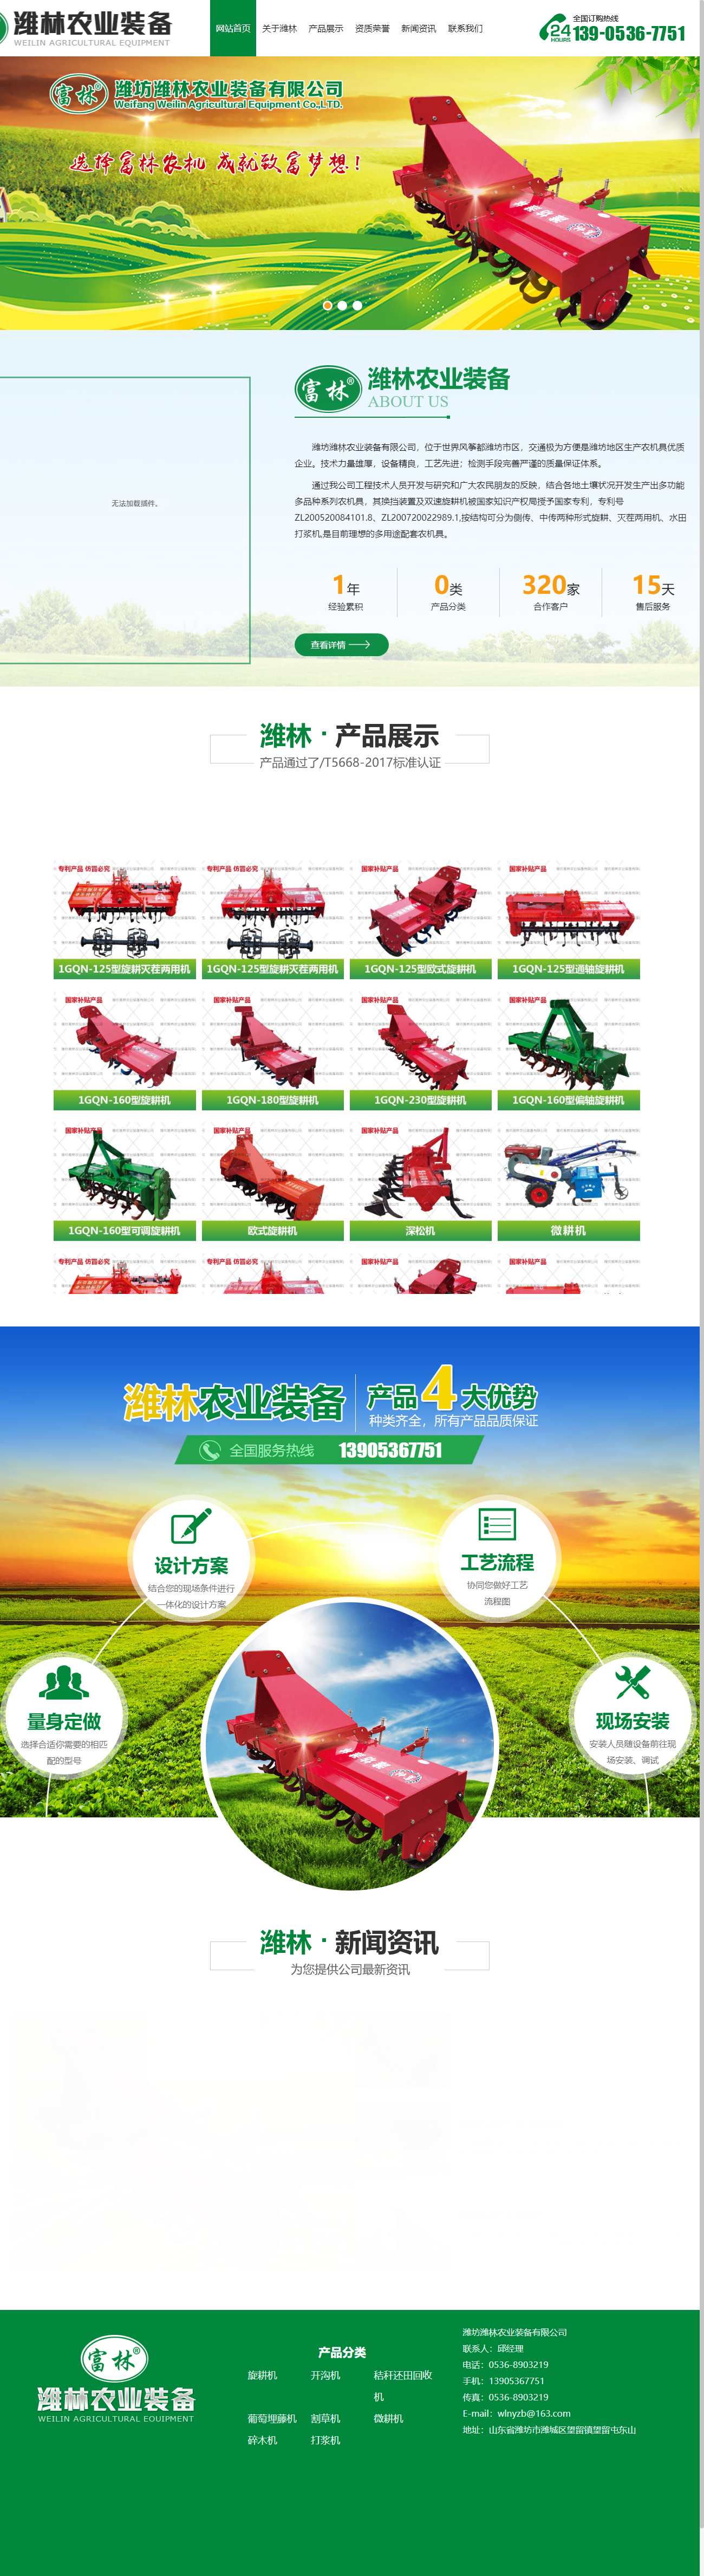 潍坊潍林农业装备有限公司网站案例